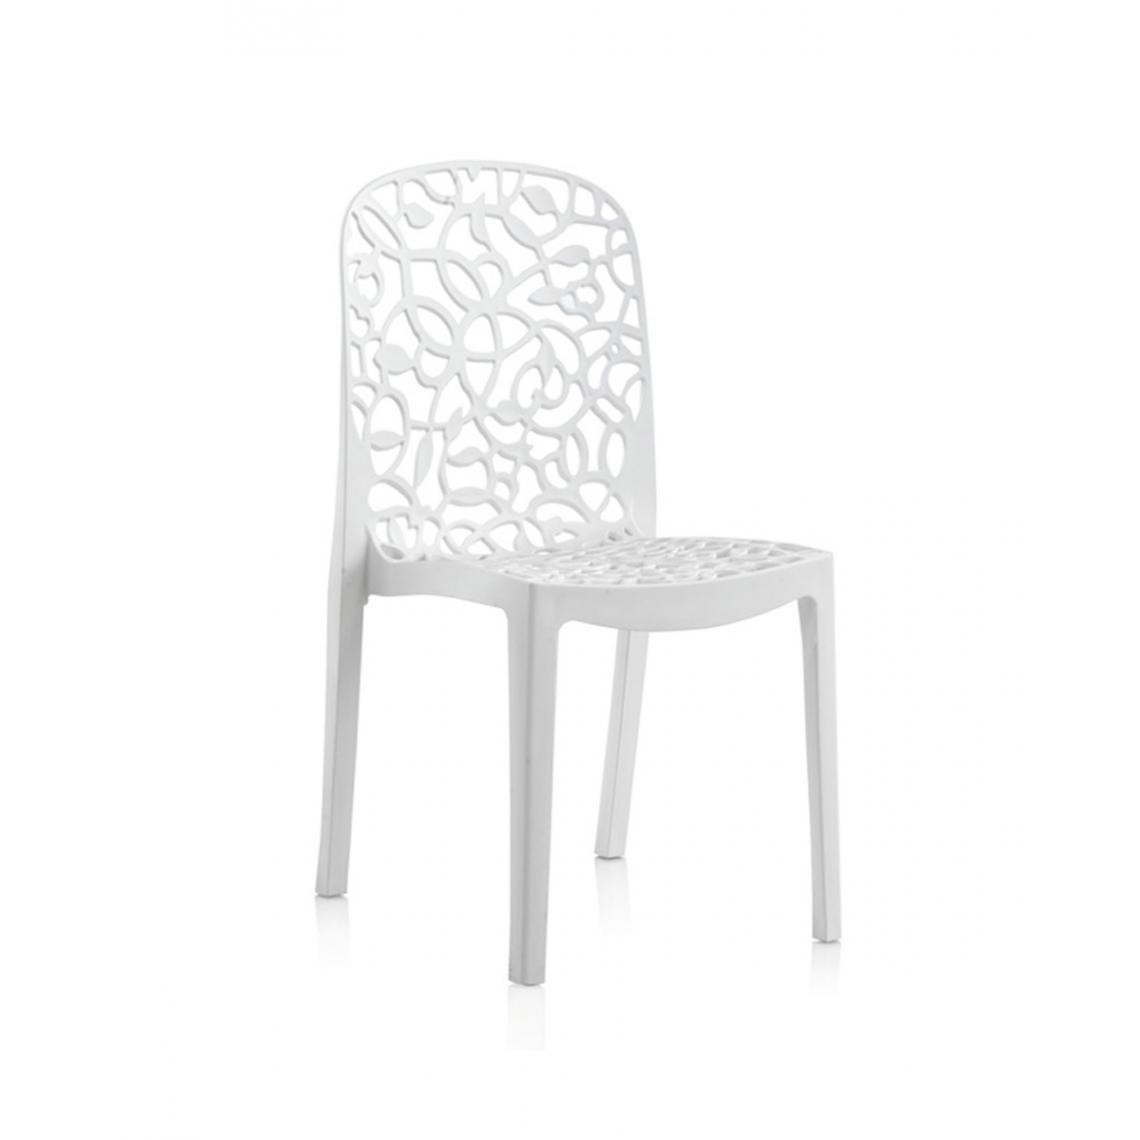 Pegane - Lot de 6 chaises de jardin empilables en résine coloris blanc - Longueur 47 x Profondeur 50 x Hauteur 87 cm - Chaises de jardin